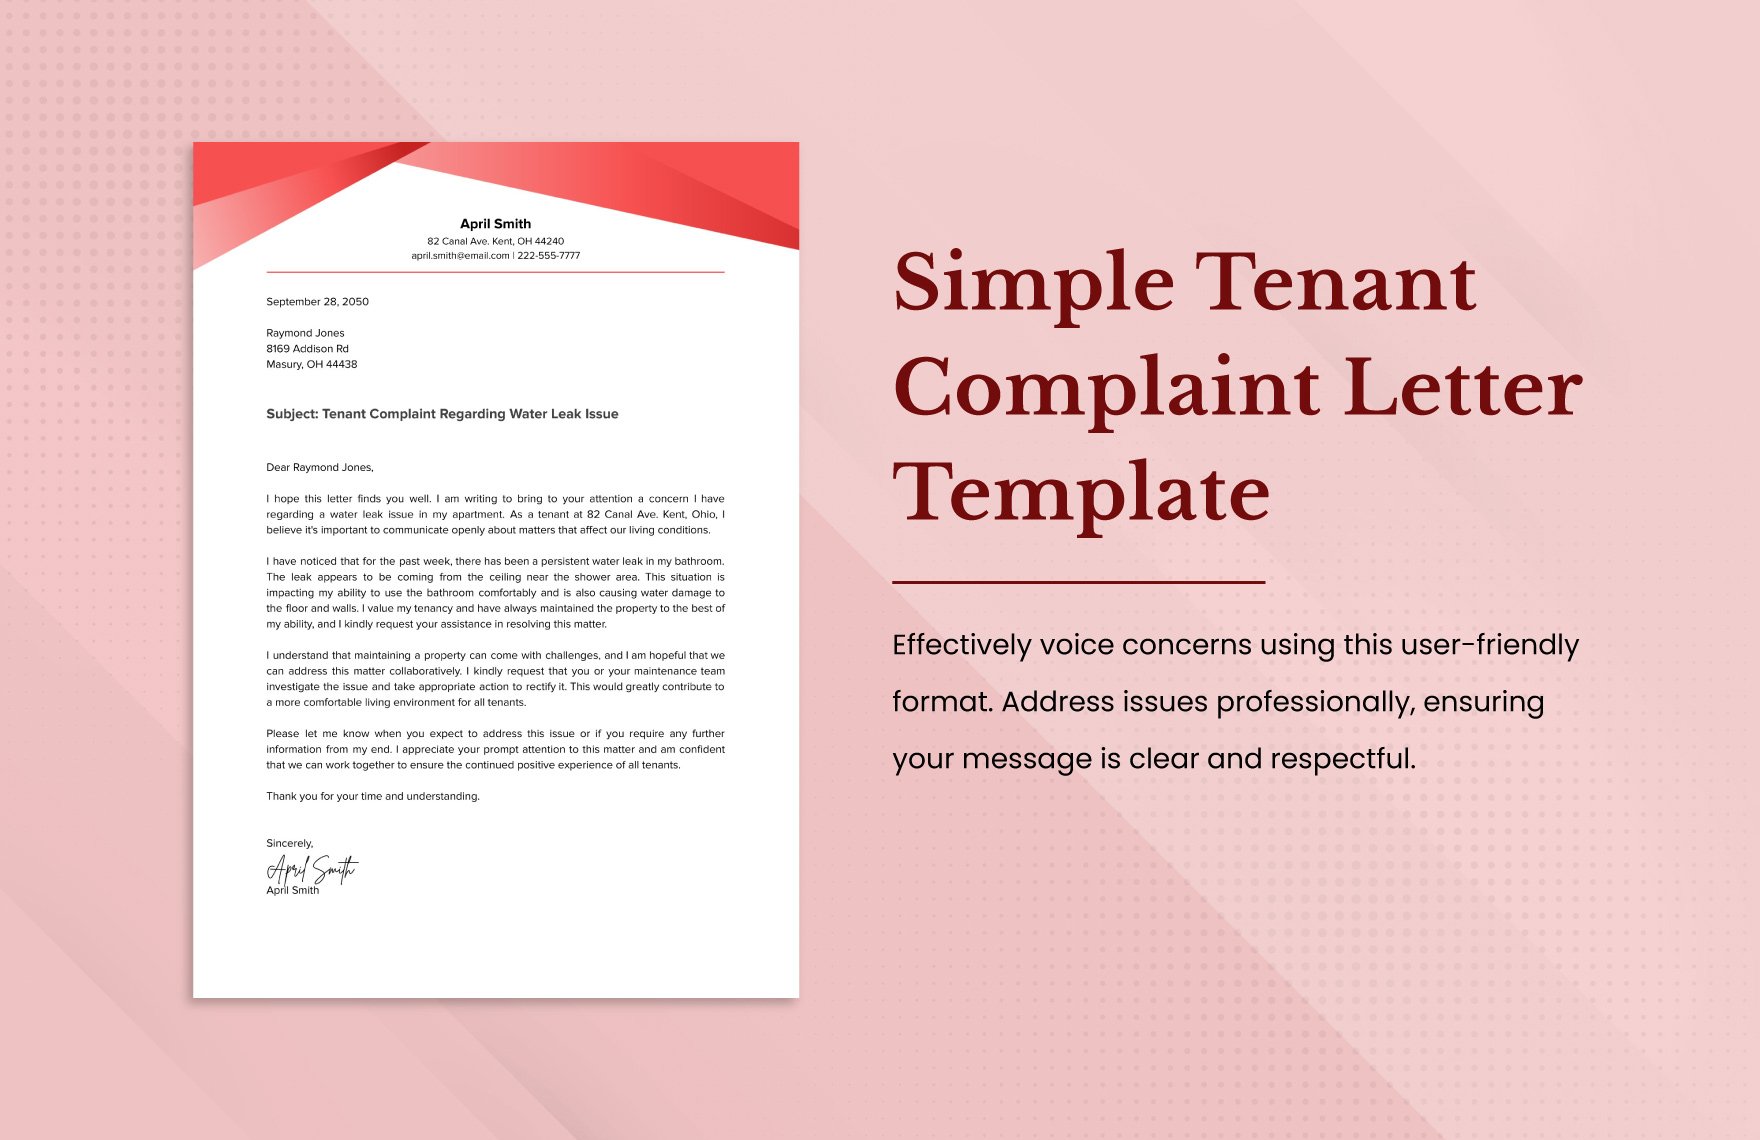 Simple Tenant Complaint Letter Template